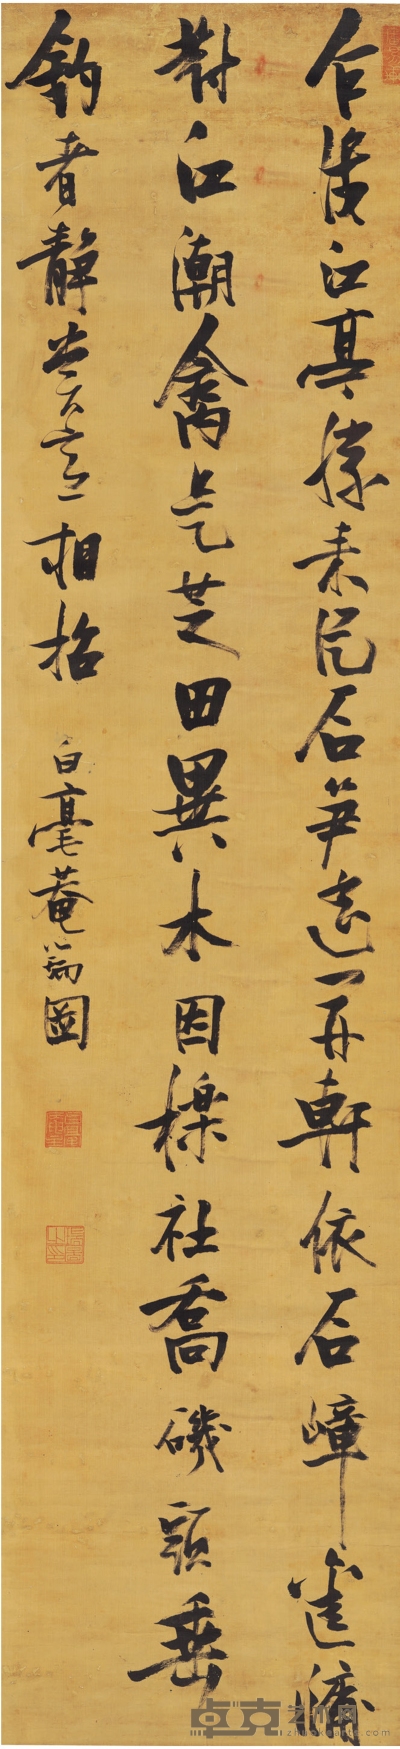 张瑞图 行书 五言诗 205.5×48.5cm